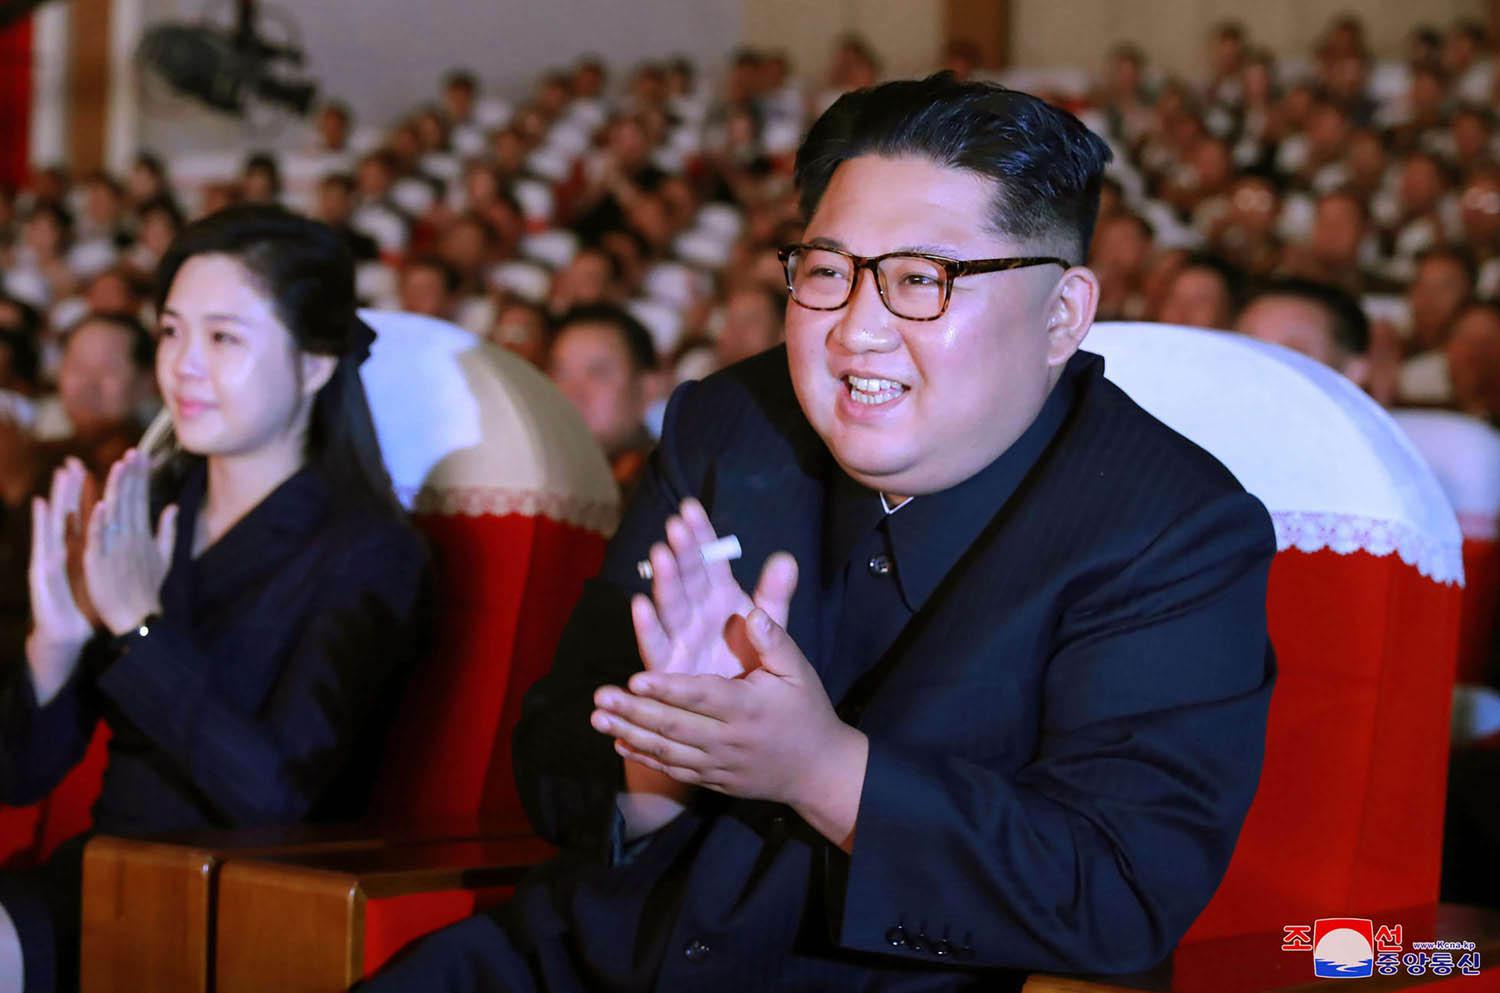 الزعيم الكوري كيم جونغ أون في حفل رسمي